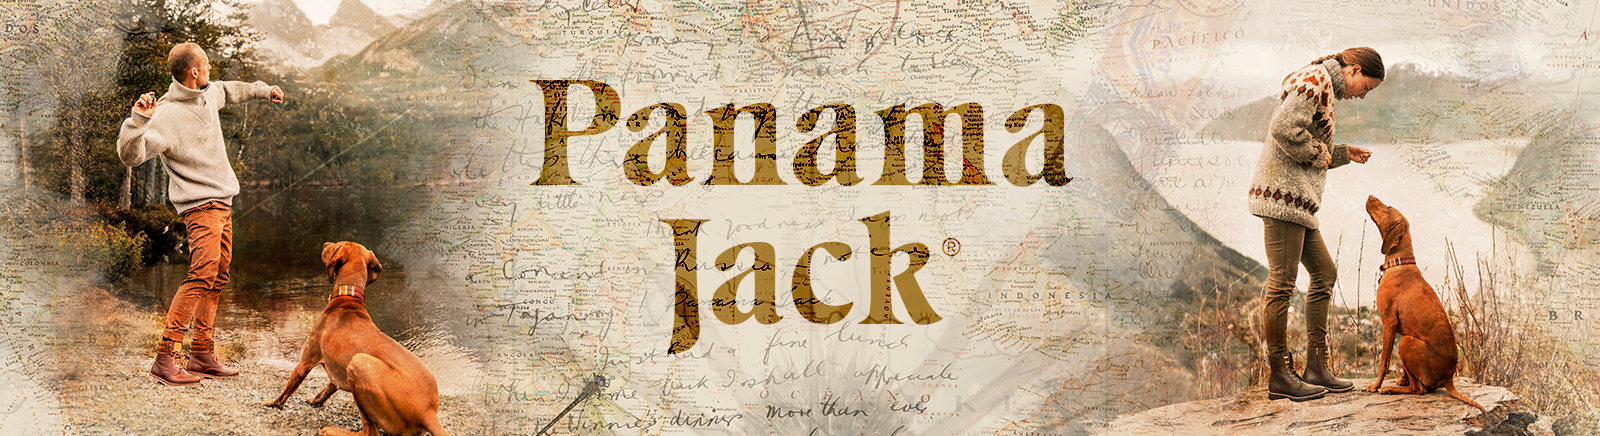 Panama Jack Winter Boots für Damen im Online-Shop von GISY kaufen